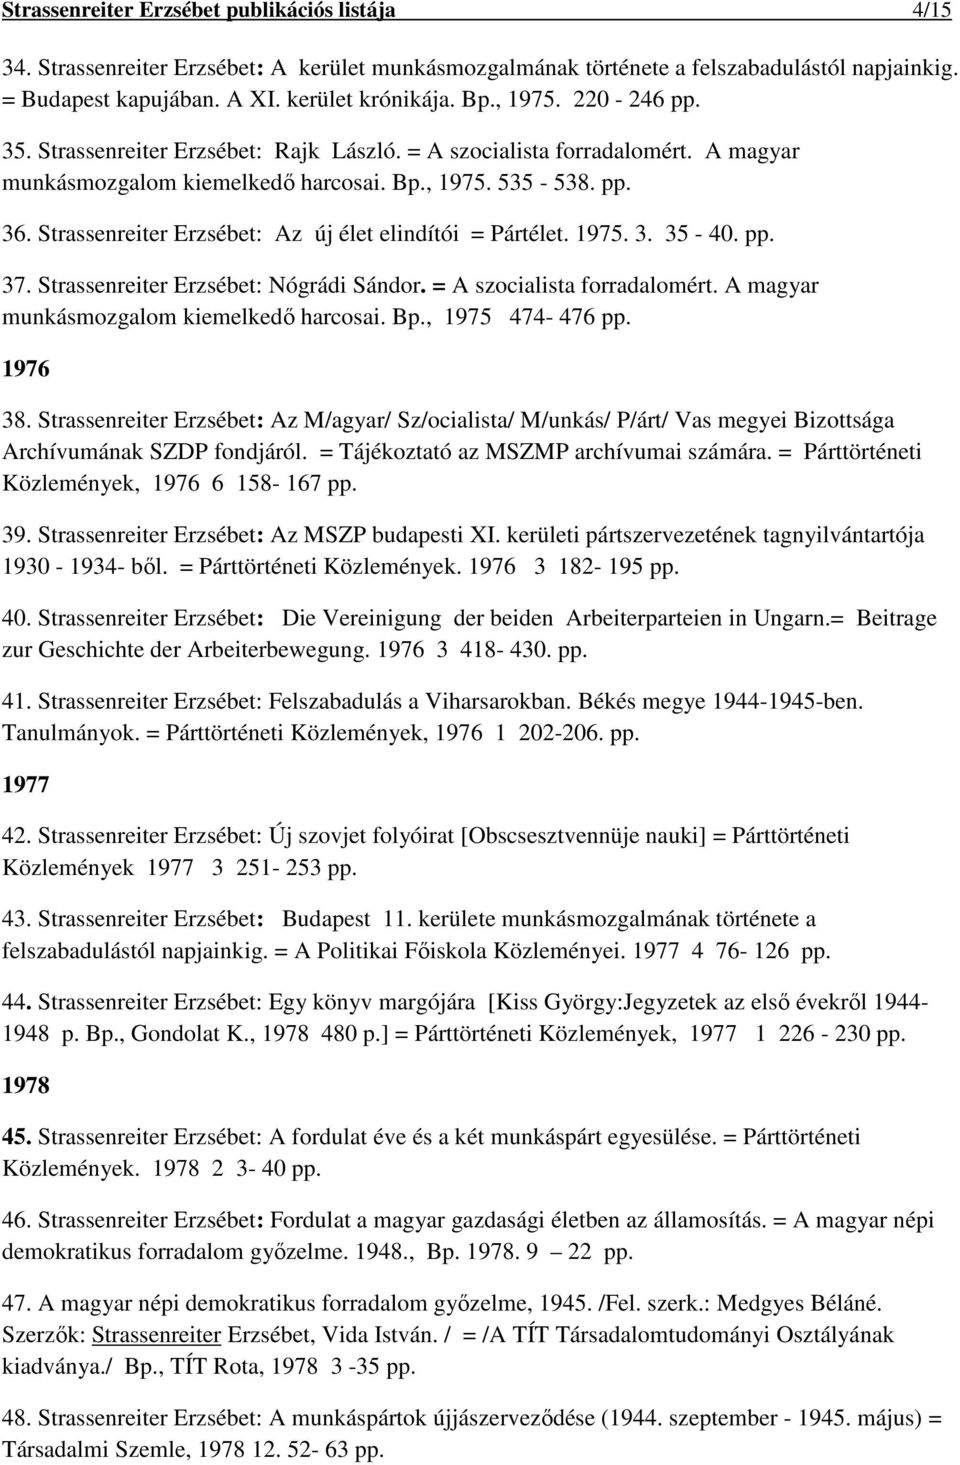 Strassenreiter Erzsébet. publikációs listája - PDF Ingyenes letöltés